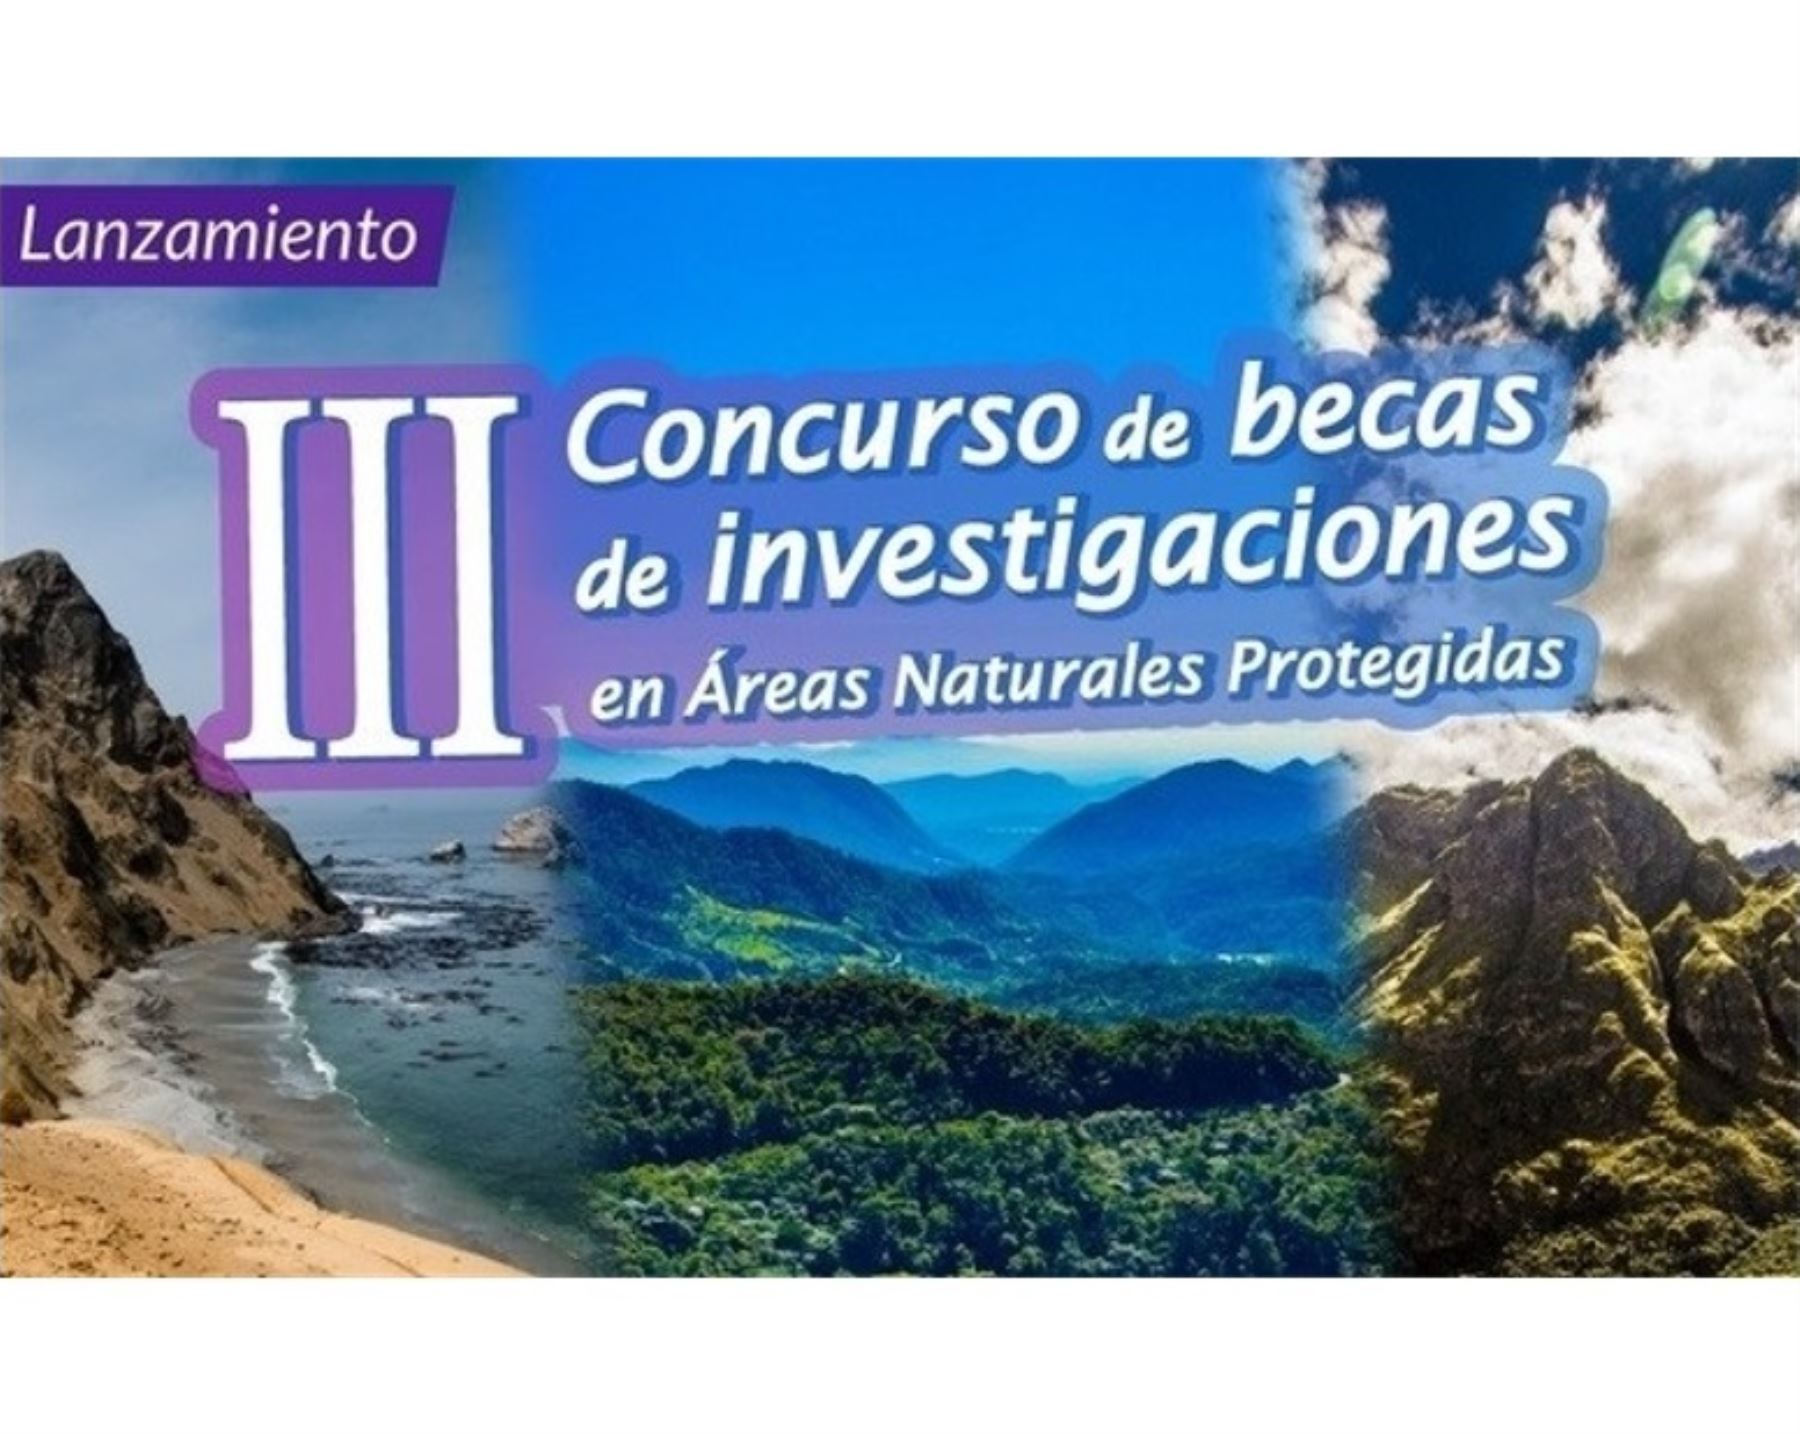 Sernanp lanzó concurso para otorgar becas y financiar investigaciones prioritarias en áreas naturales protegidas. Foto: ANDINA/difusión.